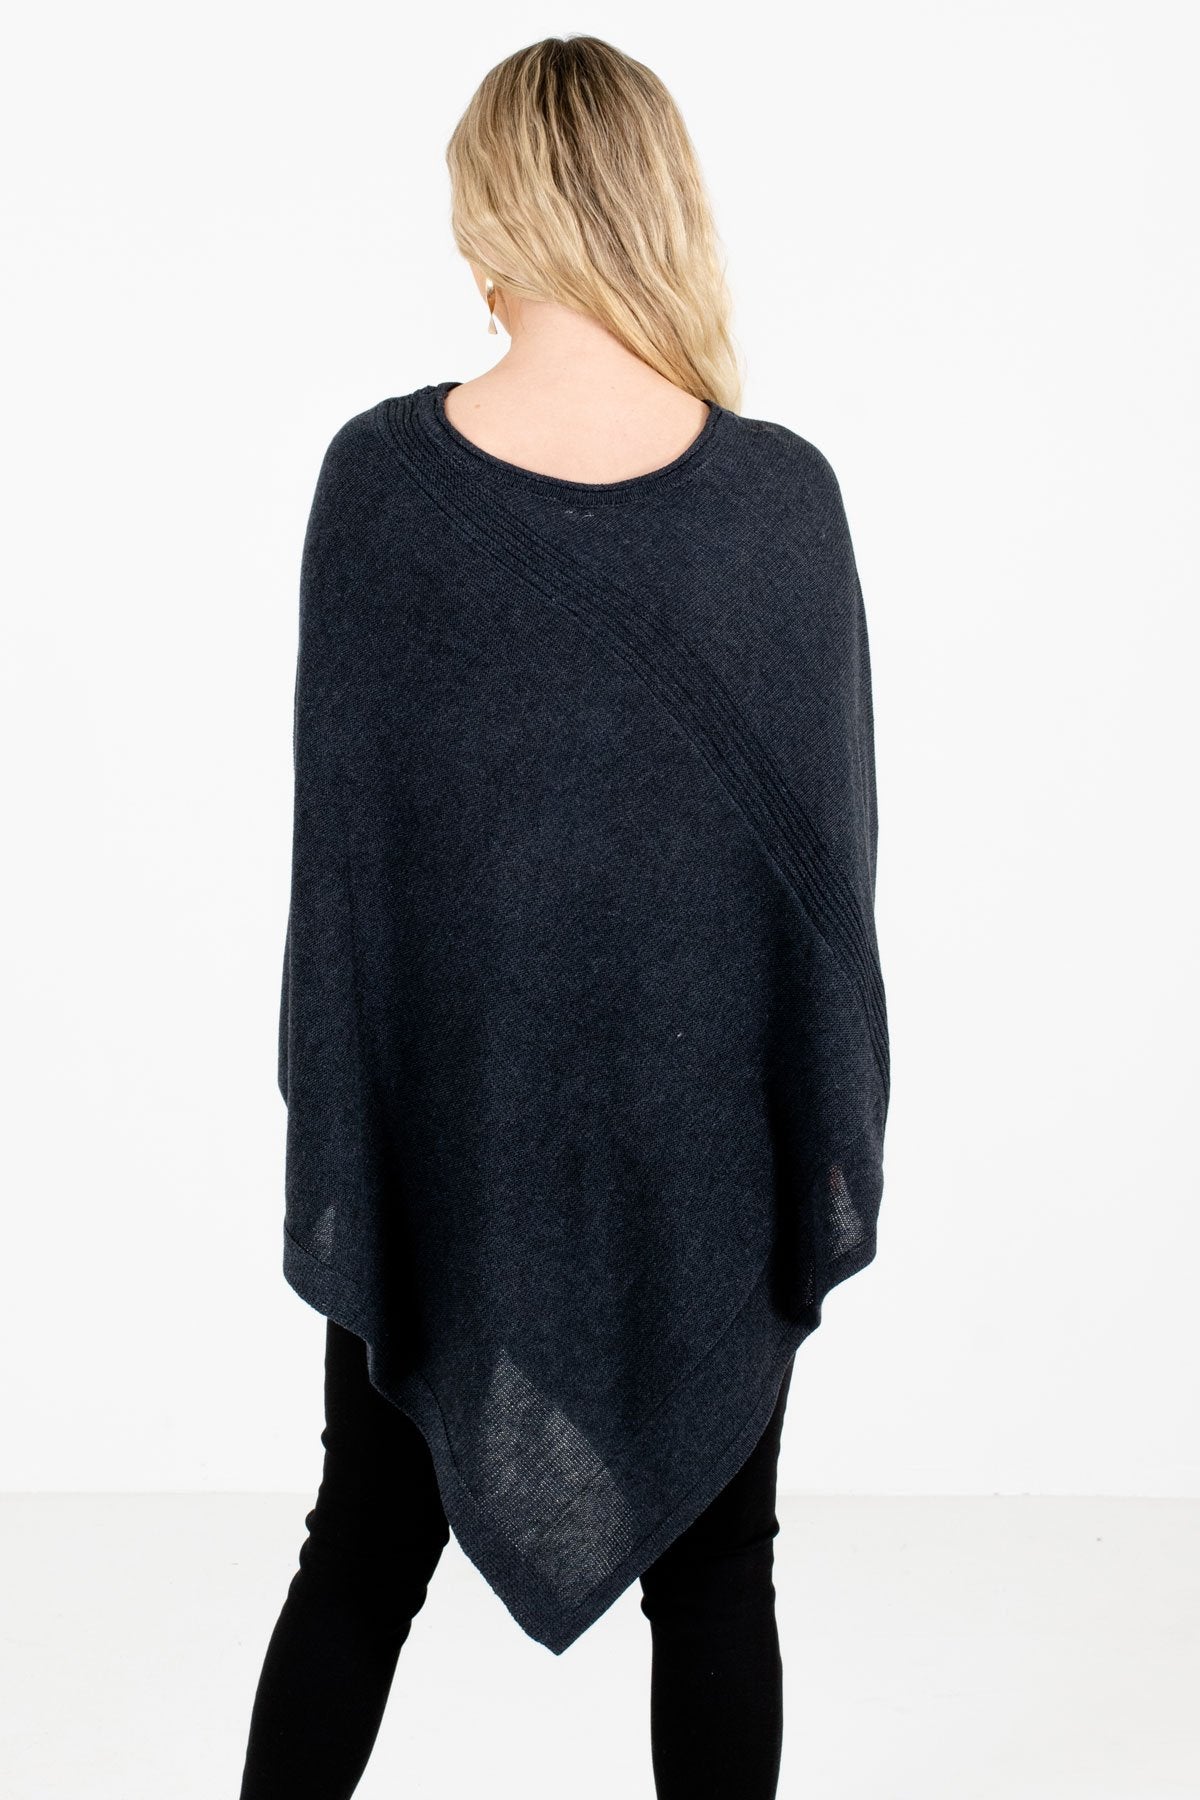 Women's Charcoal Gray Asymmetrical Hem Boutique Poncho Sweater 